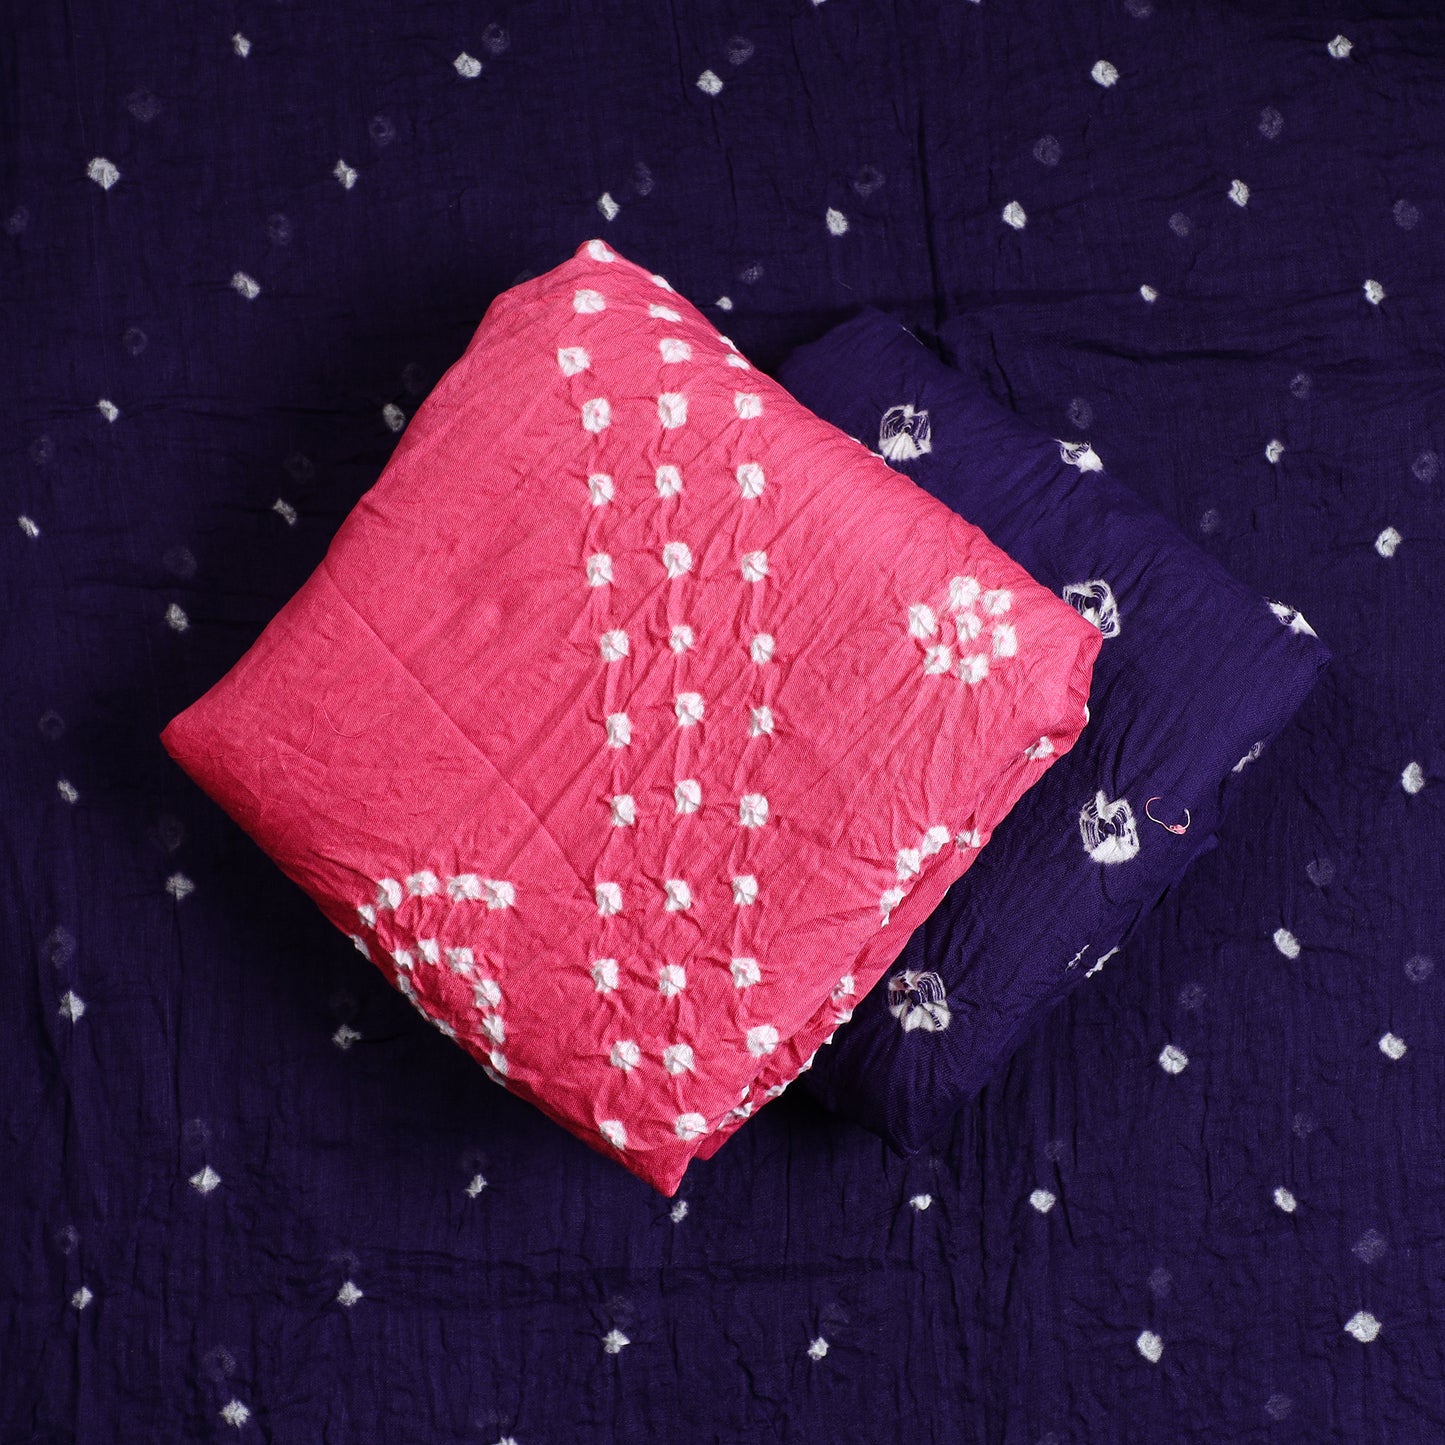 Pink - 3pc Kutch Bandhani Tie-Dye Satin Cotton Suit Material Set